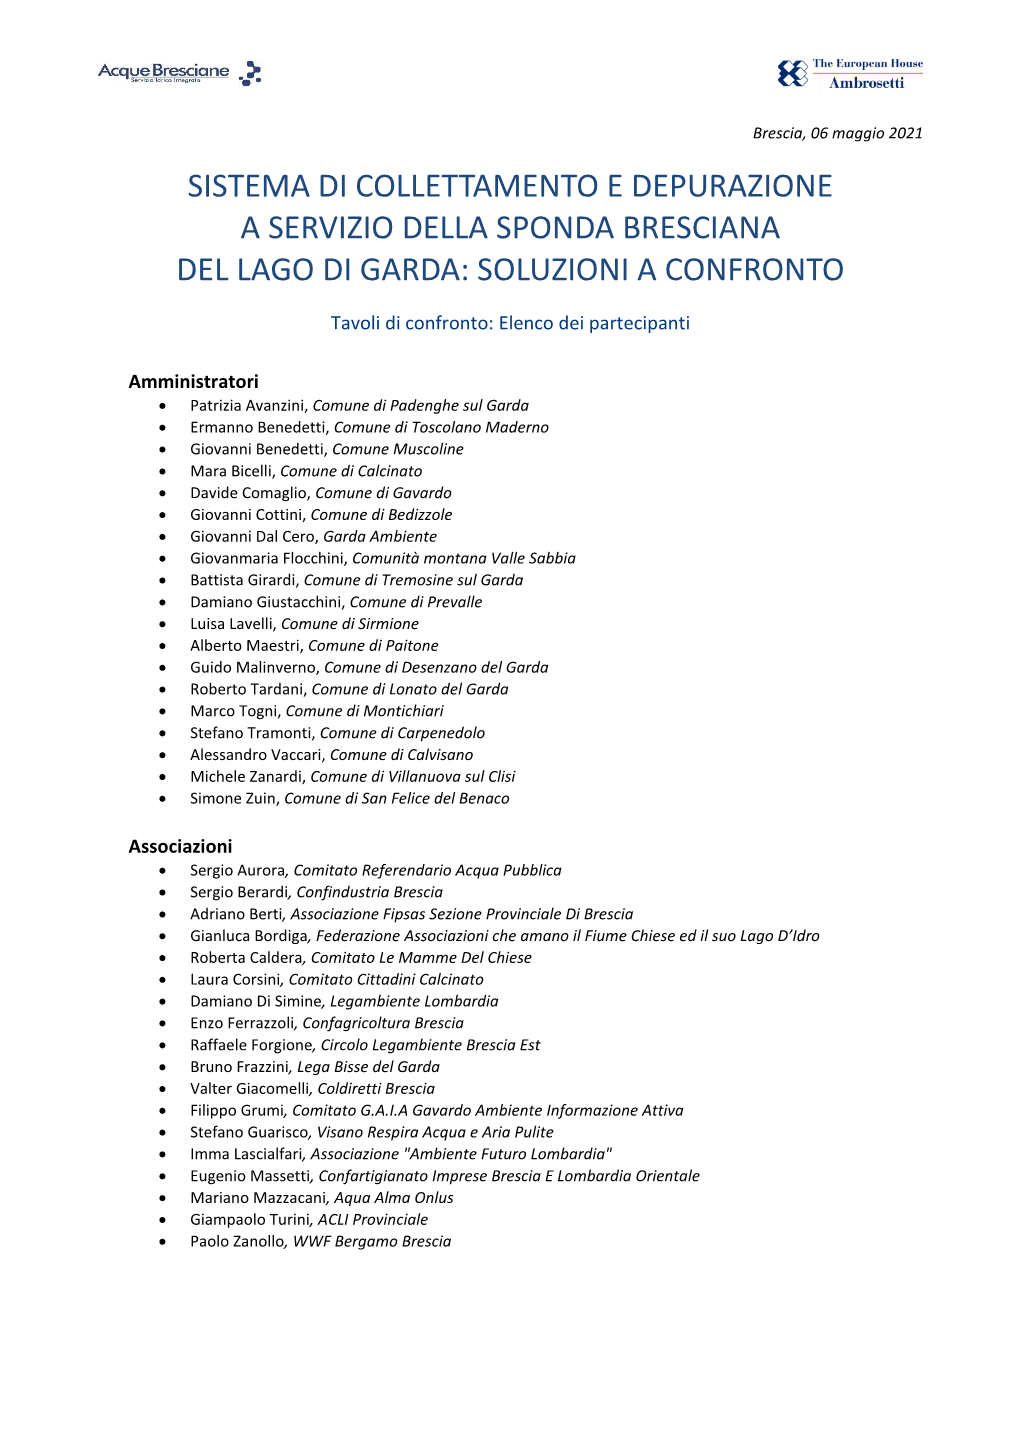 Sistema Di Collettamento E Depurazione a Servizio Della Sponda Bresciana Del Lago Di Garda: Soluzioni a Confronto